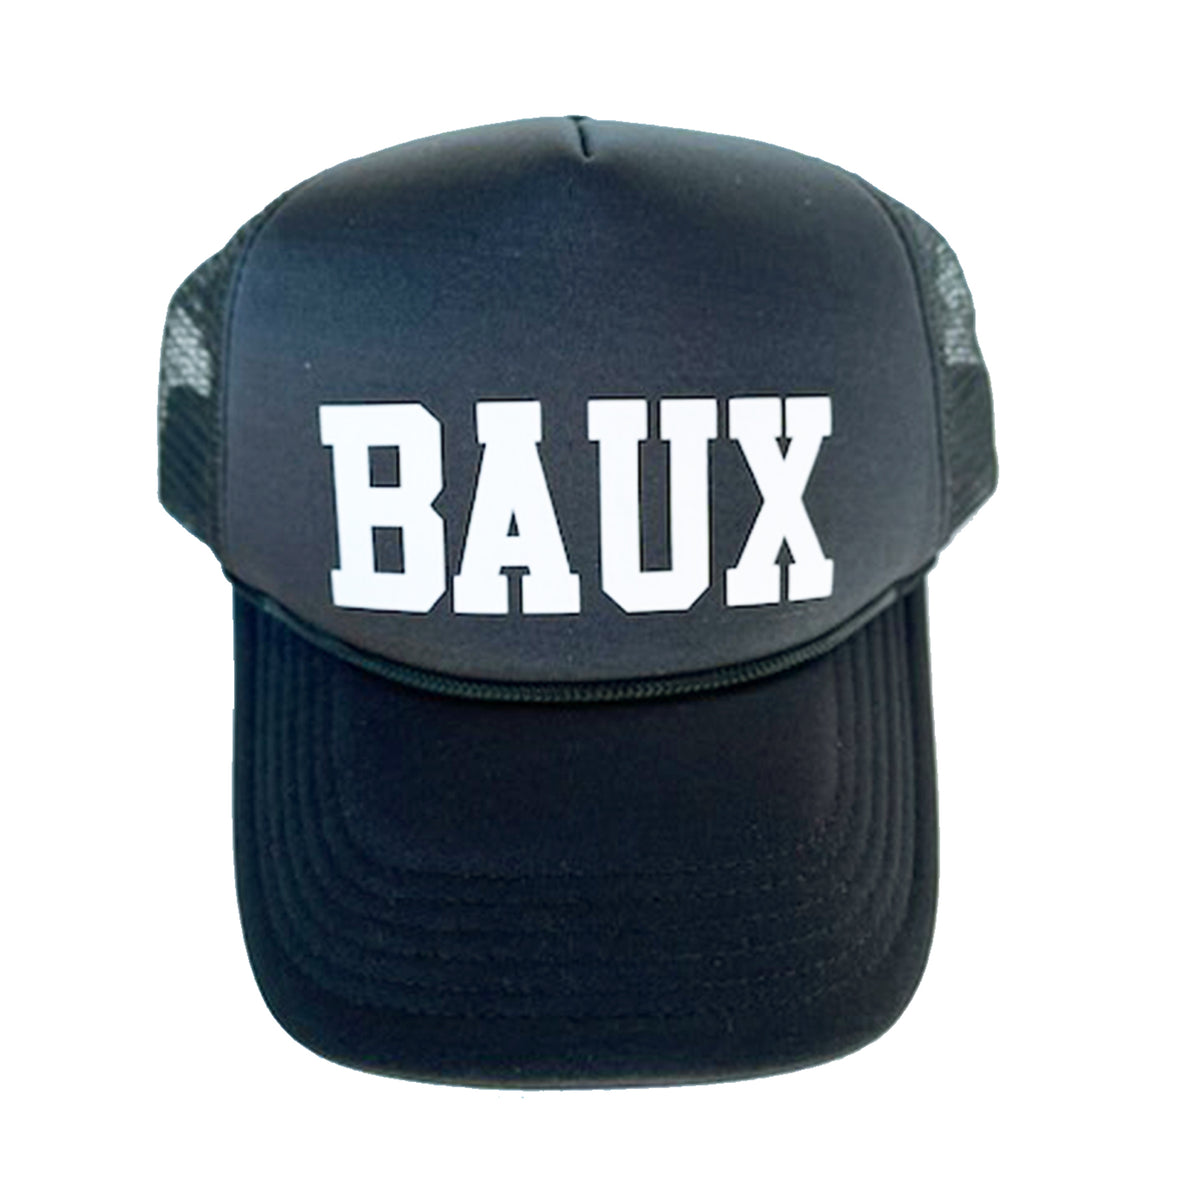 Bauxite Athletic Hat